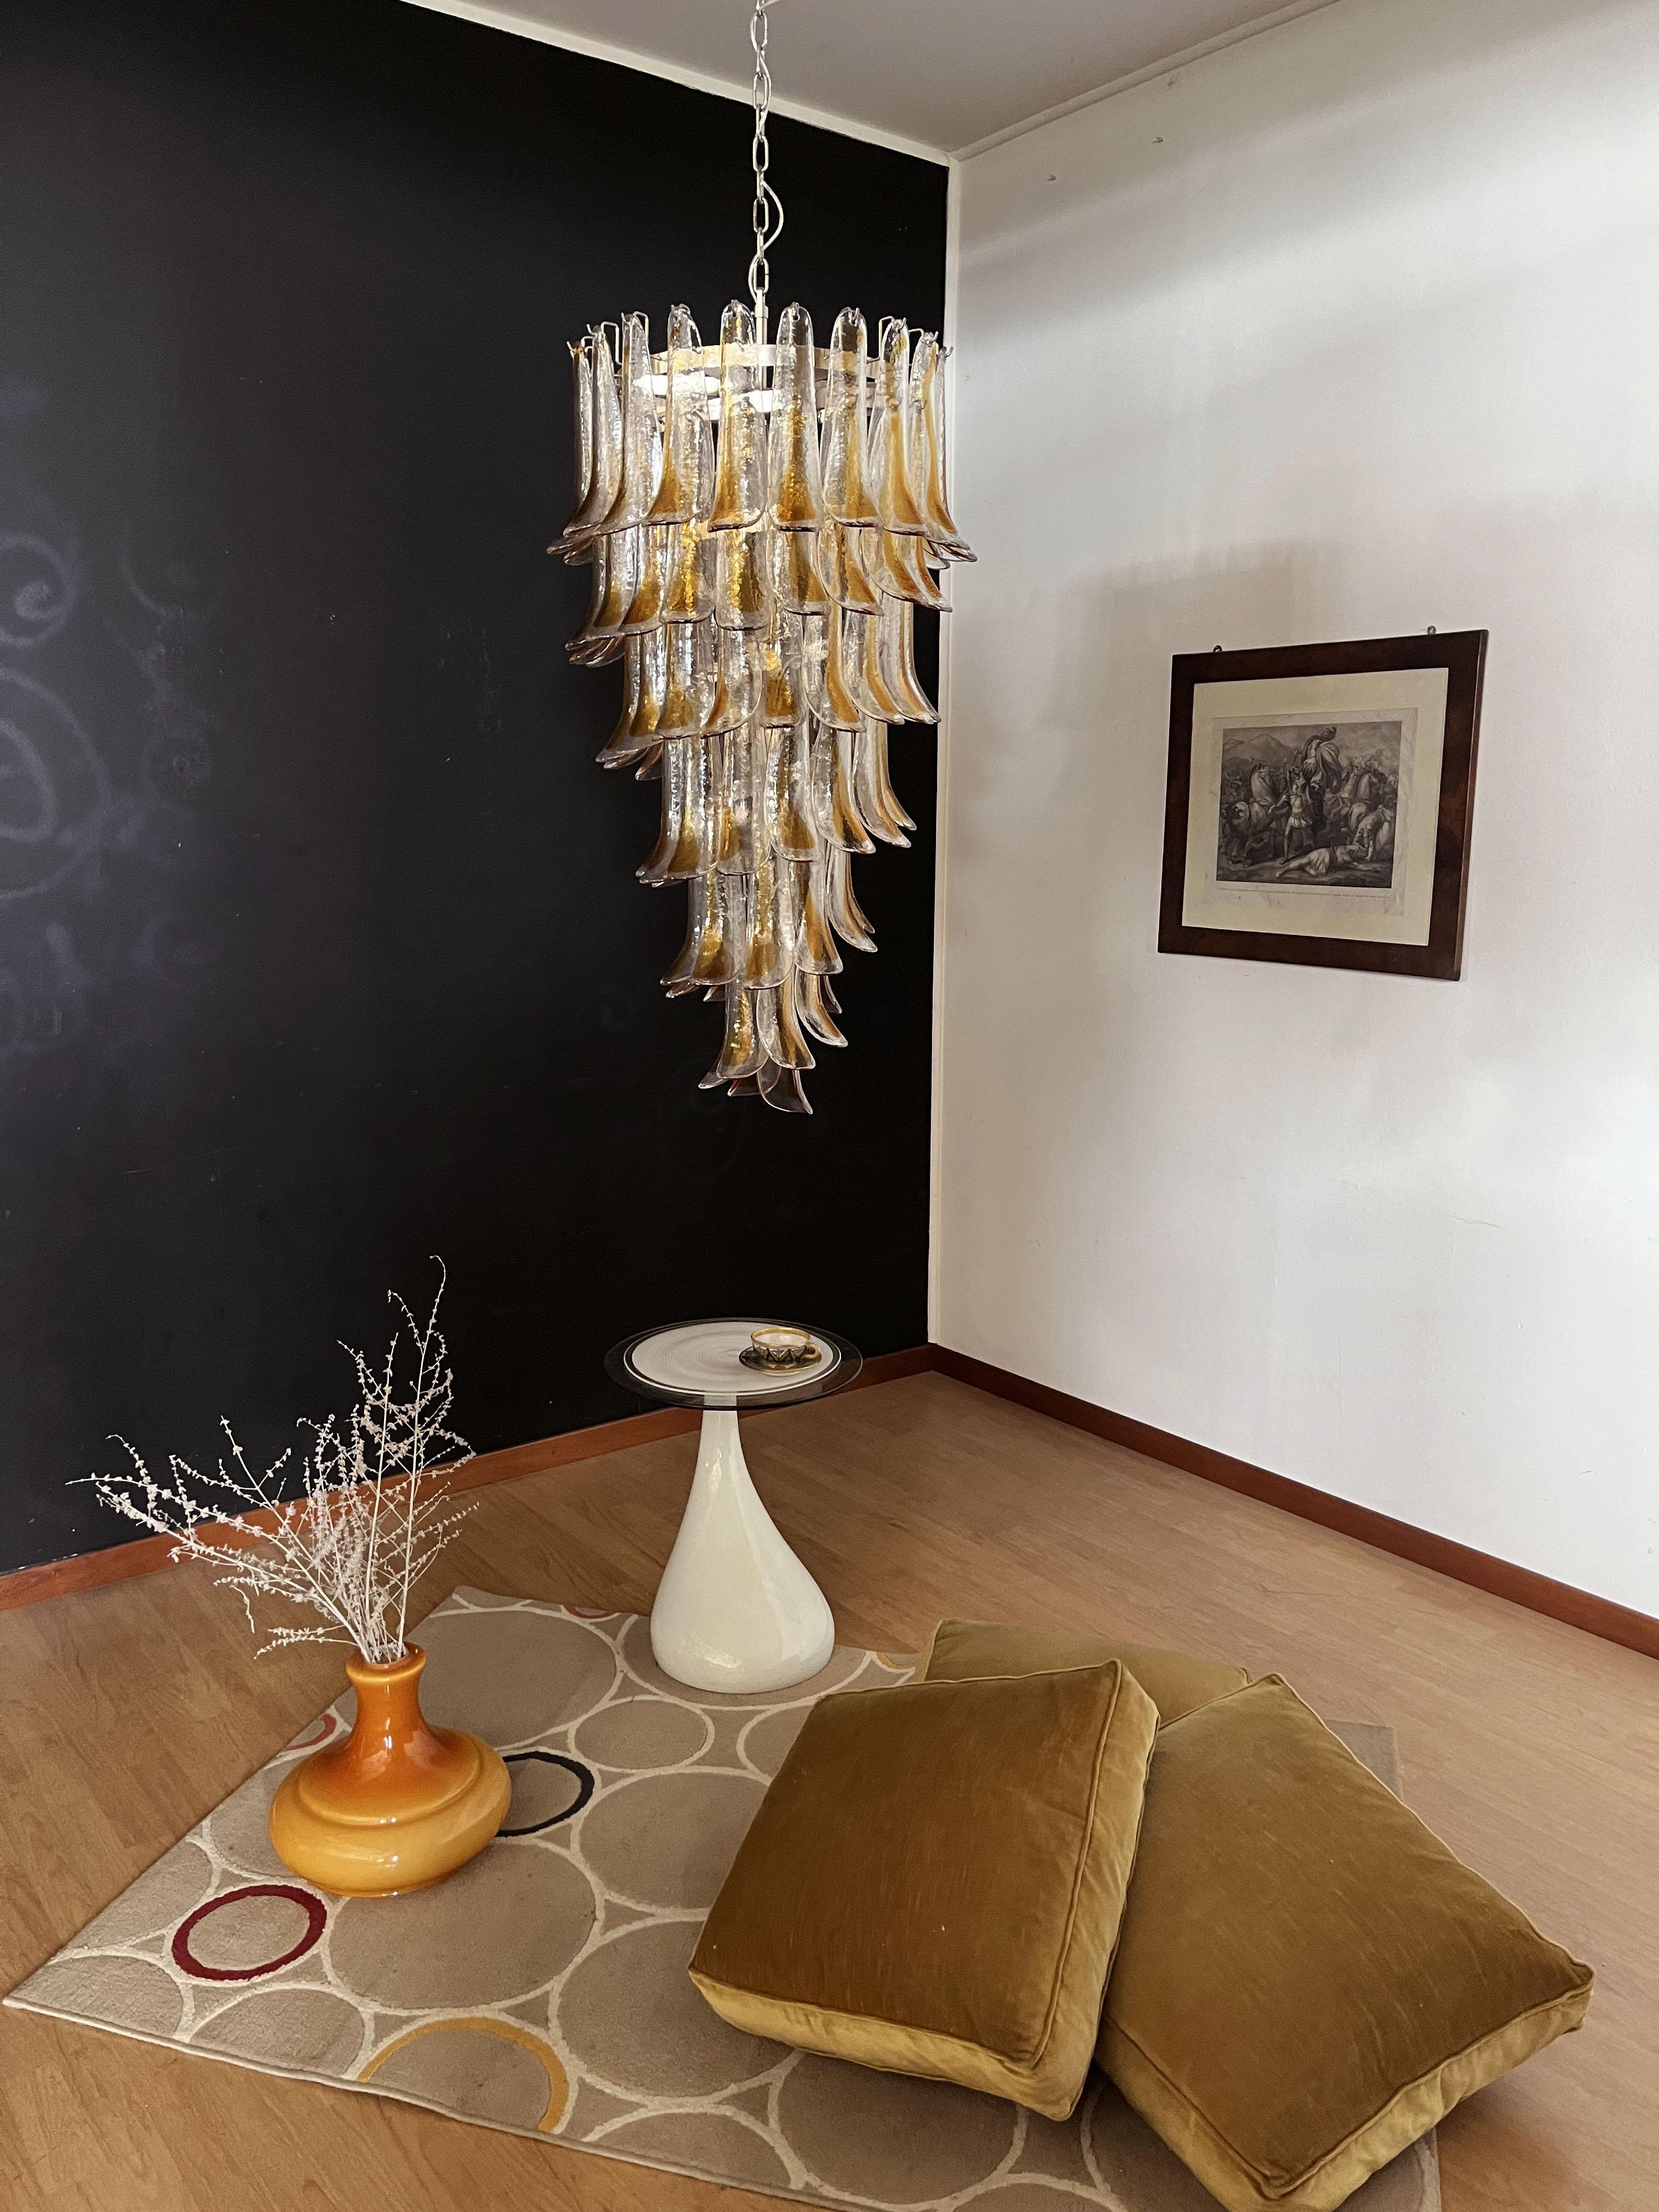 Magnifique et immense lustre italien de Murano composé de 83 splendides pétales en verre (clair avec tache d'ambre).  qui donnent un aspect très élégant. Les verres de ce lustre sont de véritables œuvres d'art. Les verres descendent en forme de